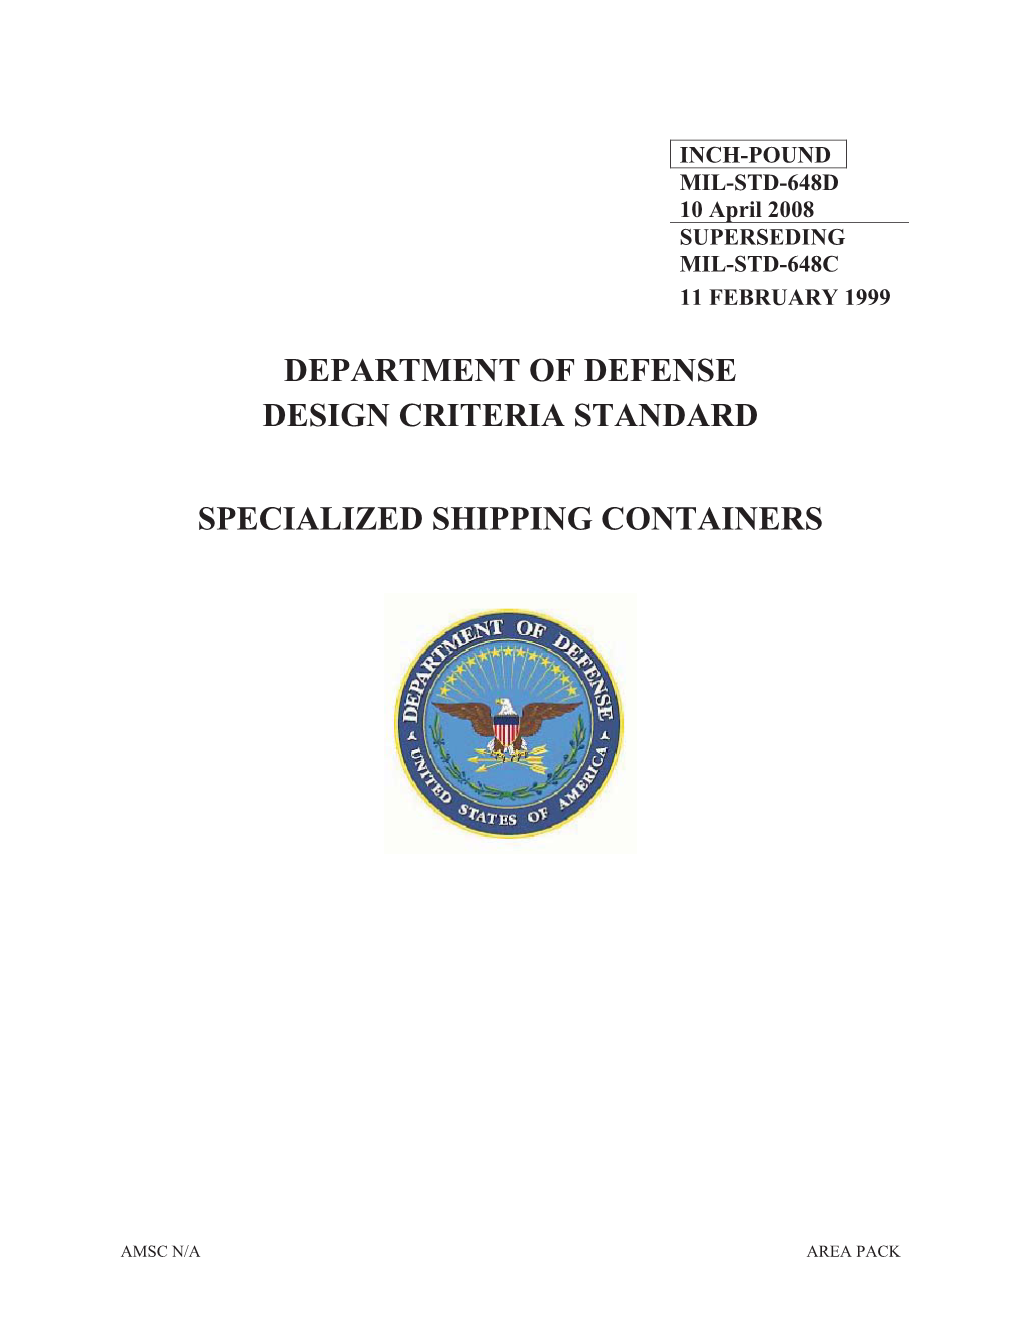 Department of Defense Design Criteria Standard